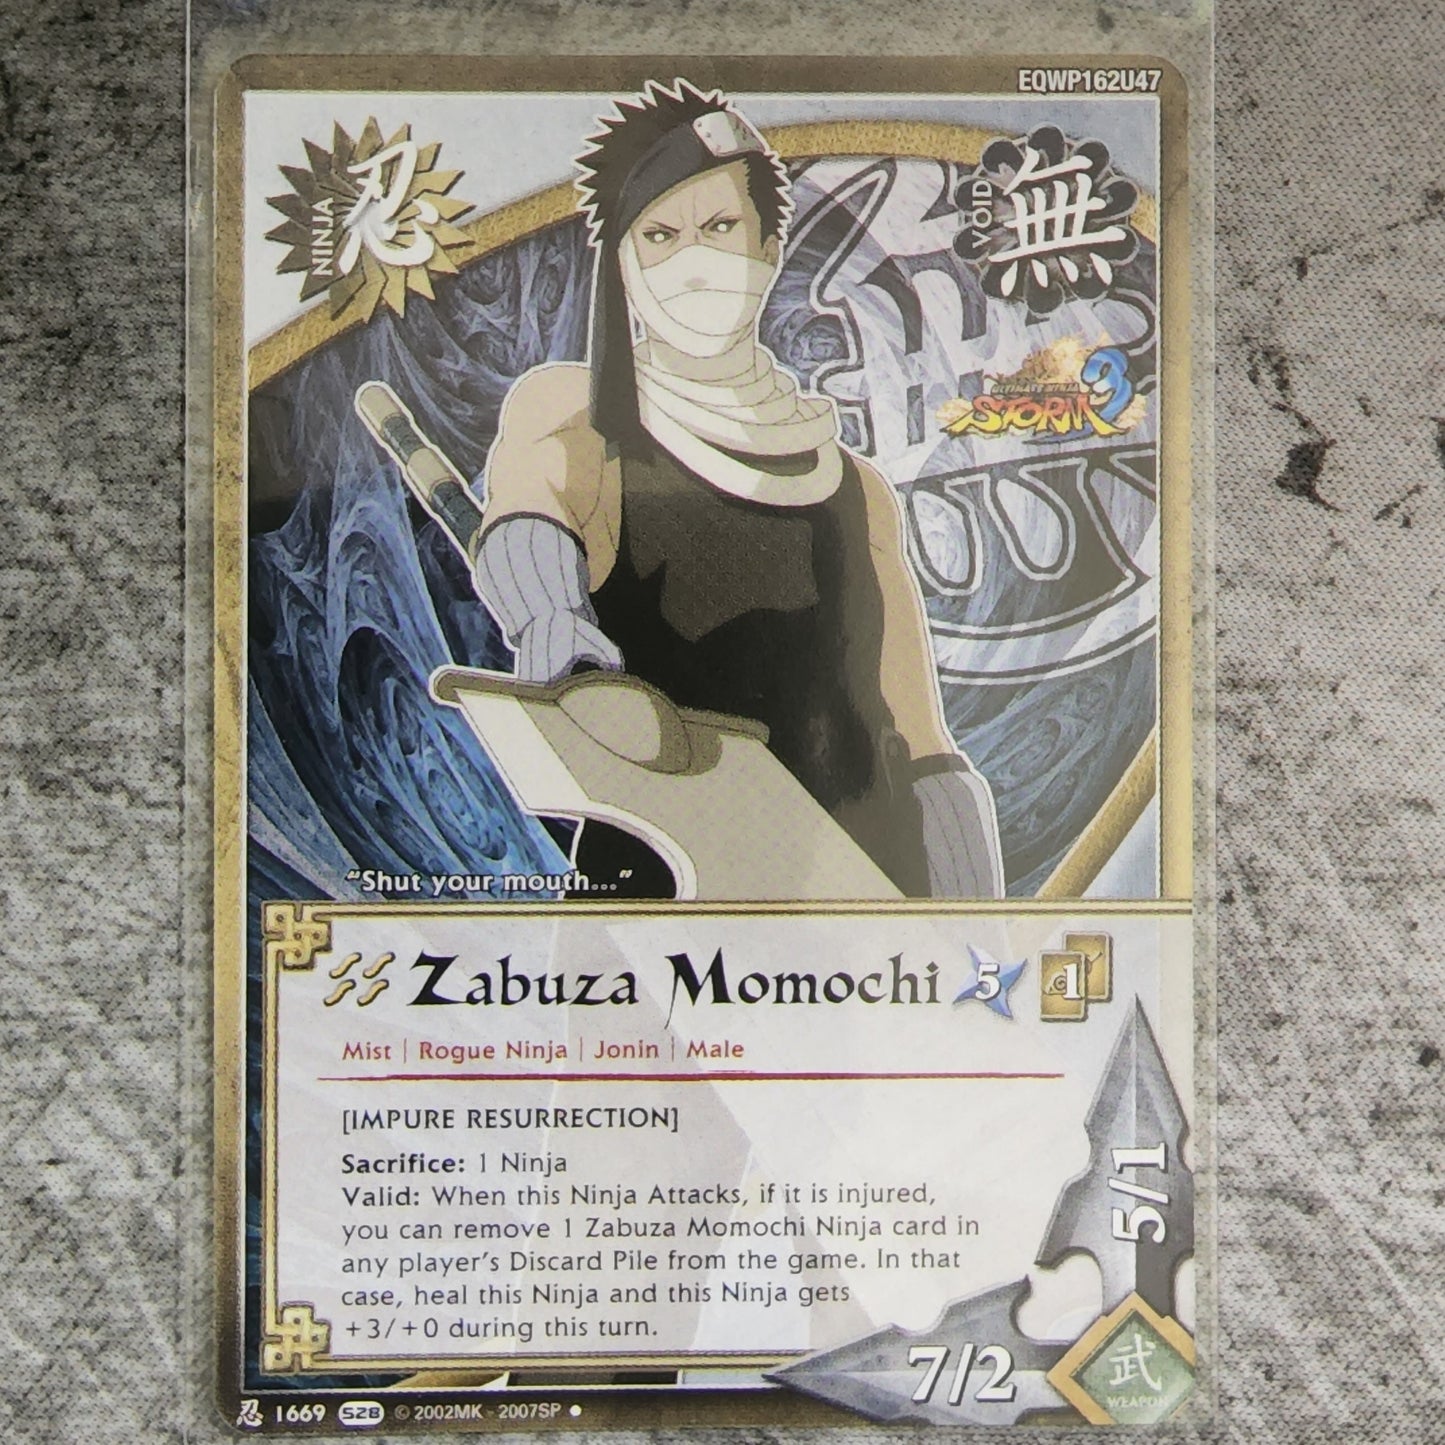 Zabuza Momochi [Impure Resurrection] Ninja 1669 Uncommon S28 Ultimate Ninja Storm 3 Naruto CCG